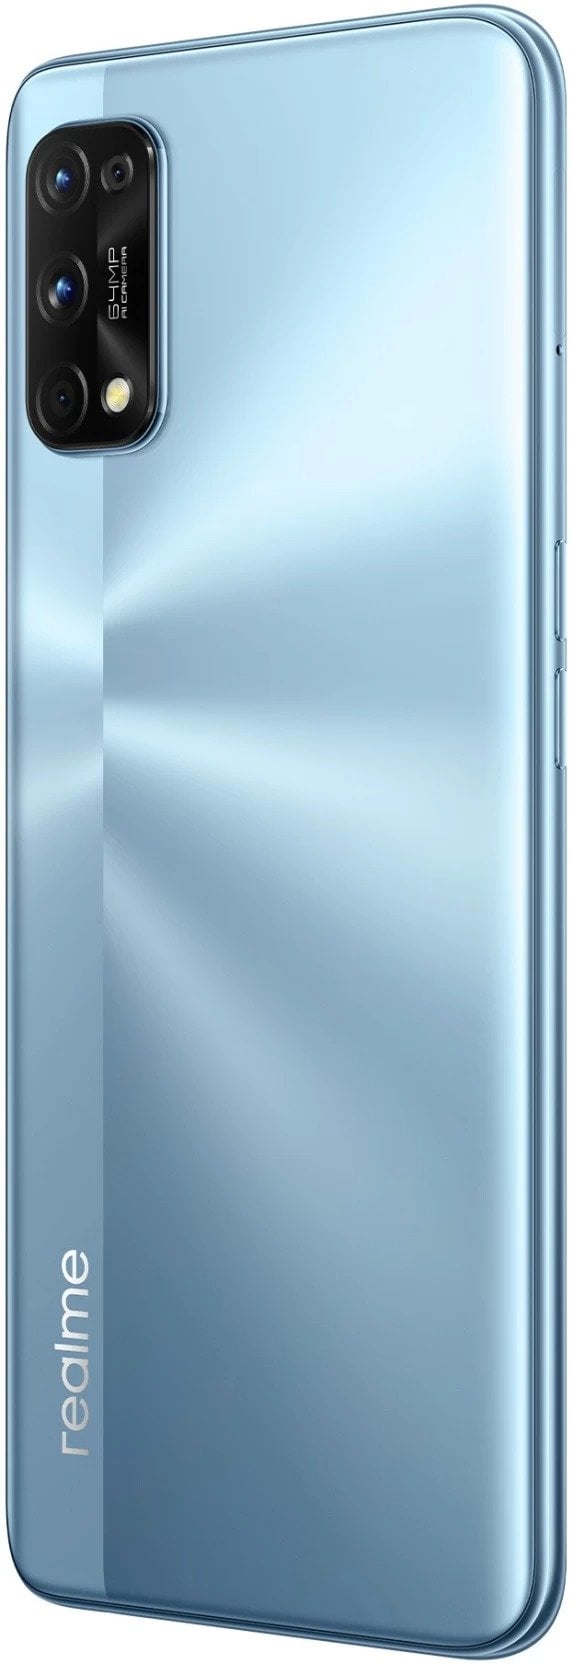 Smartphone Realme 7 Pro RMX2170 DS 8/128GB 6.4 64+8+2+2/32MP A10 - Mirror  Blue